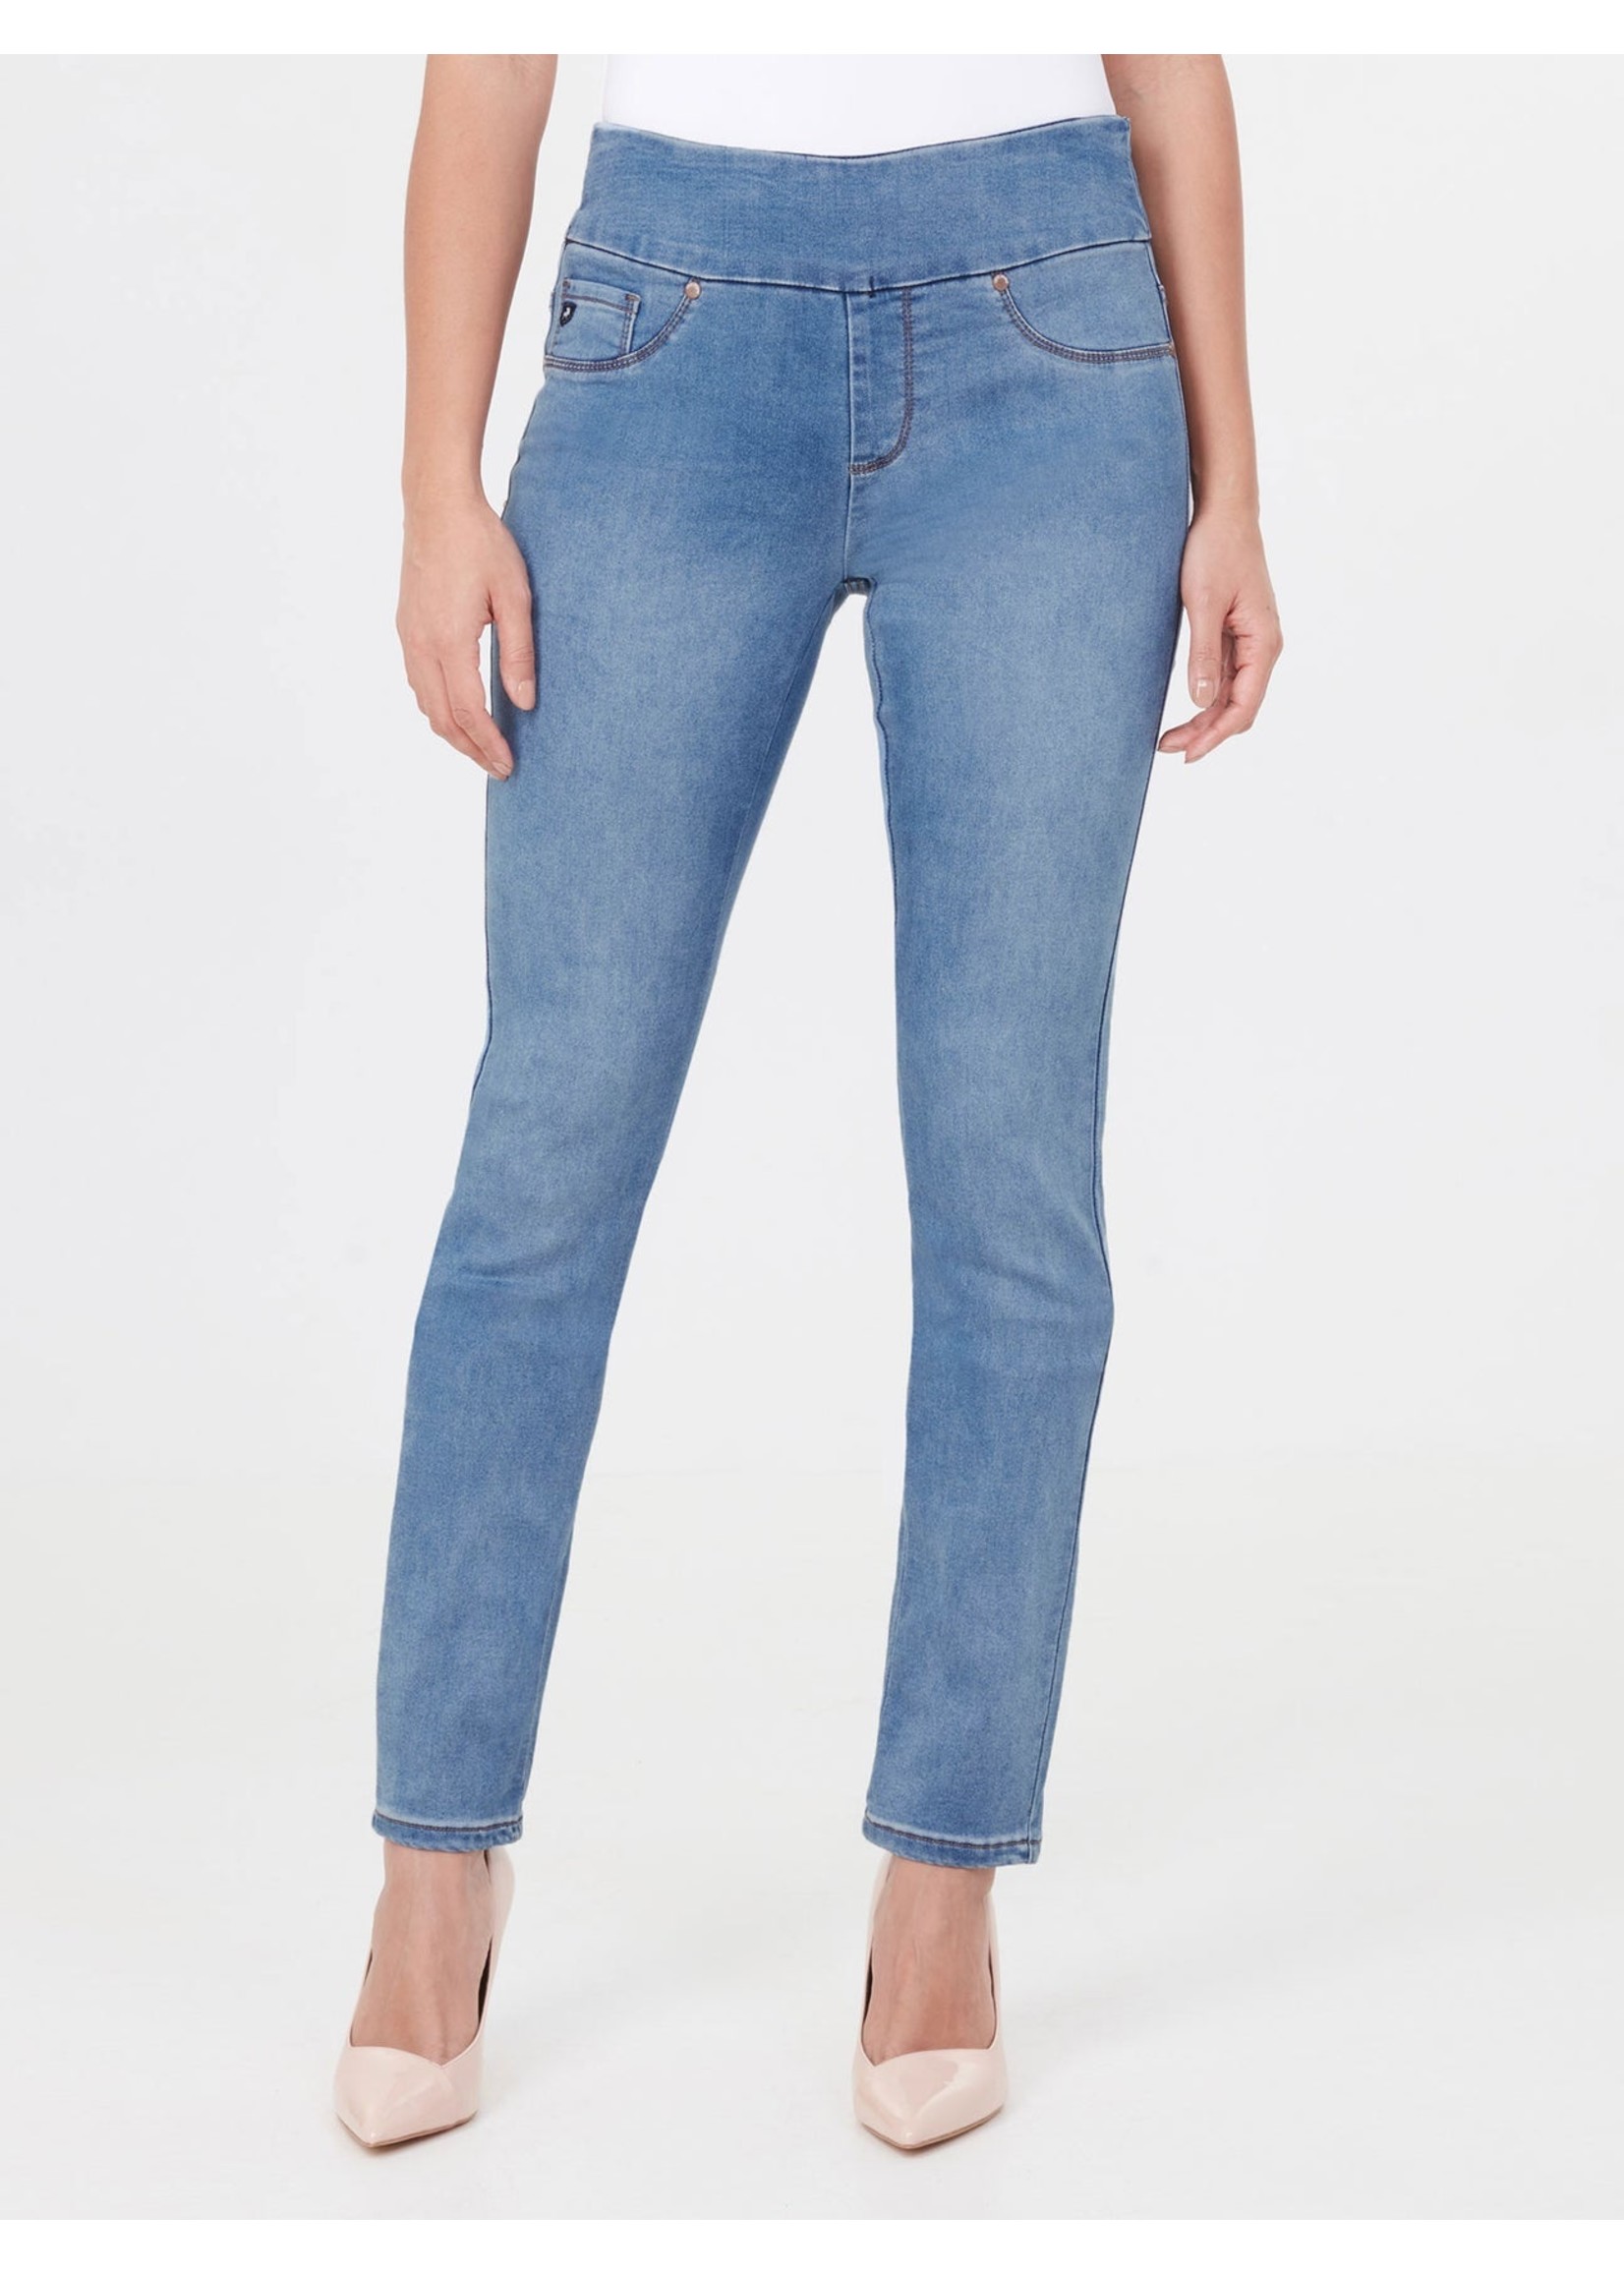 LOIS JEANS & JACKETS Jeans taille régulière facile à enfiler LIETTE SKINNY-Femme